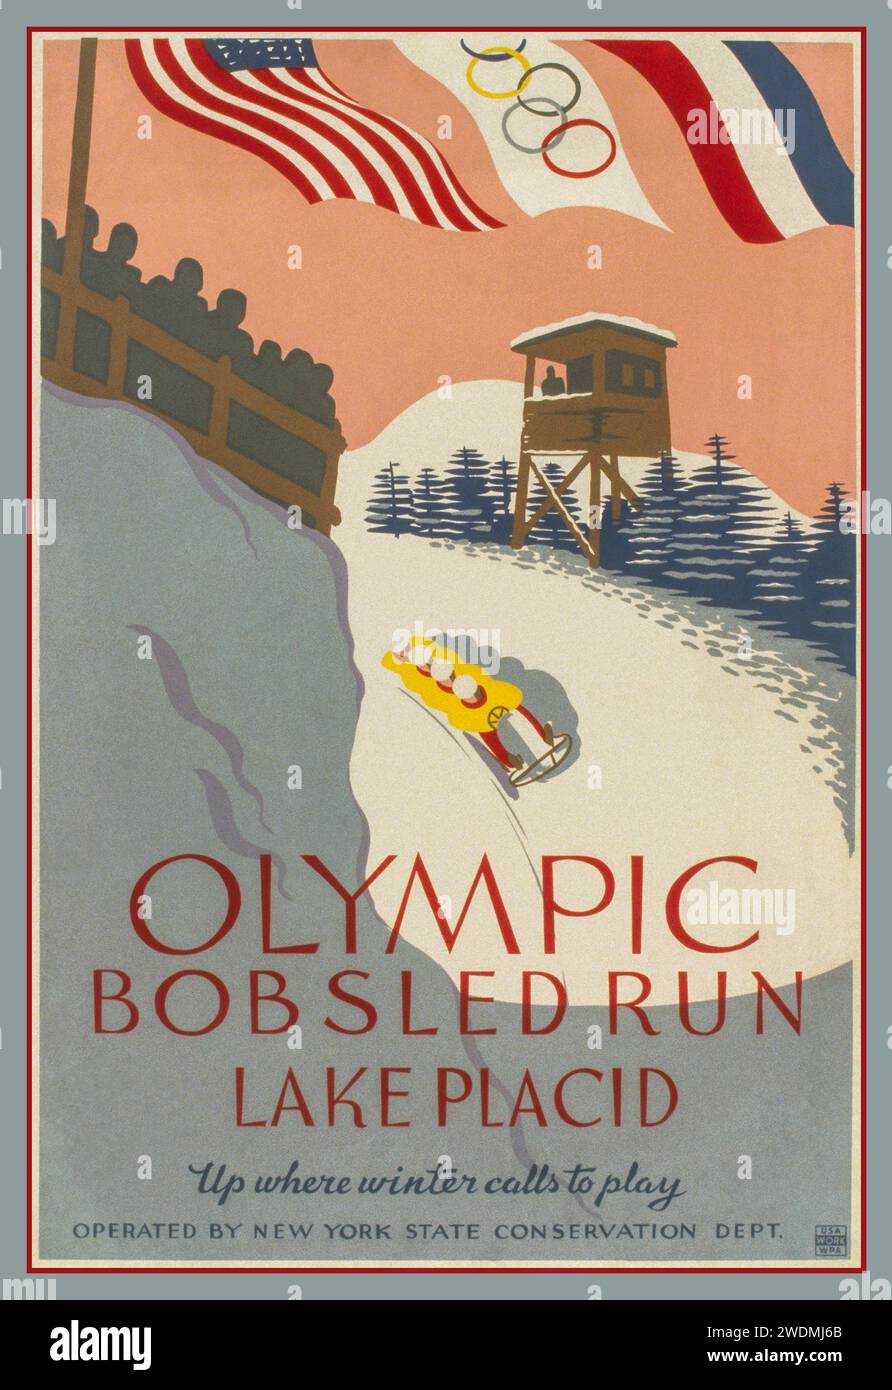 Il BOBSLED OLIMPICO del 1932 LAKE PLACID, ufficialmente conosciuto come i III Giochi olimpici invernali e comunemente noto come Lake Placid 1932, è stato un evento multisportivo invernale che si è tenuto negli Stati Uniti a Lake Placid, New York, Stati Uniti. Le partite sono state aperte il 4 febbraio e chiuse il 13 febbraio. "Pista da Bob olimpica, lago Placid su dove l'inverno chiama a giocare." Poster che promuove gli sport invernali olimpici, mostrando quattro uomini in Bob su pista con la bandiera olimpica e degli Stati Uniti dietro. 1932 Foto Stock